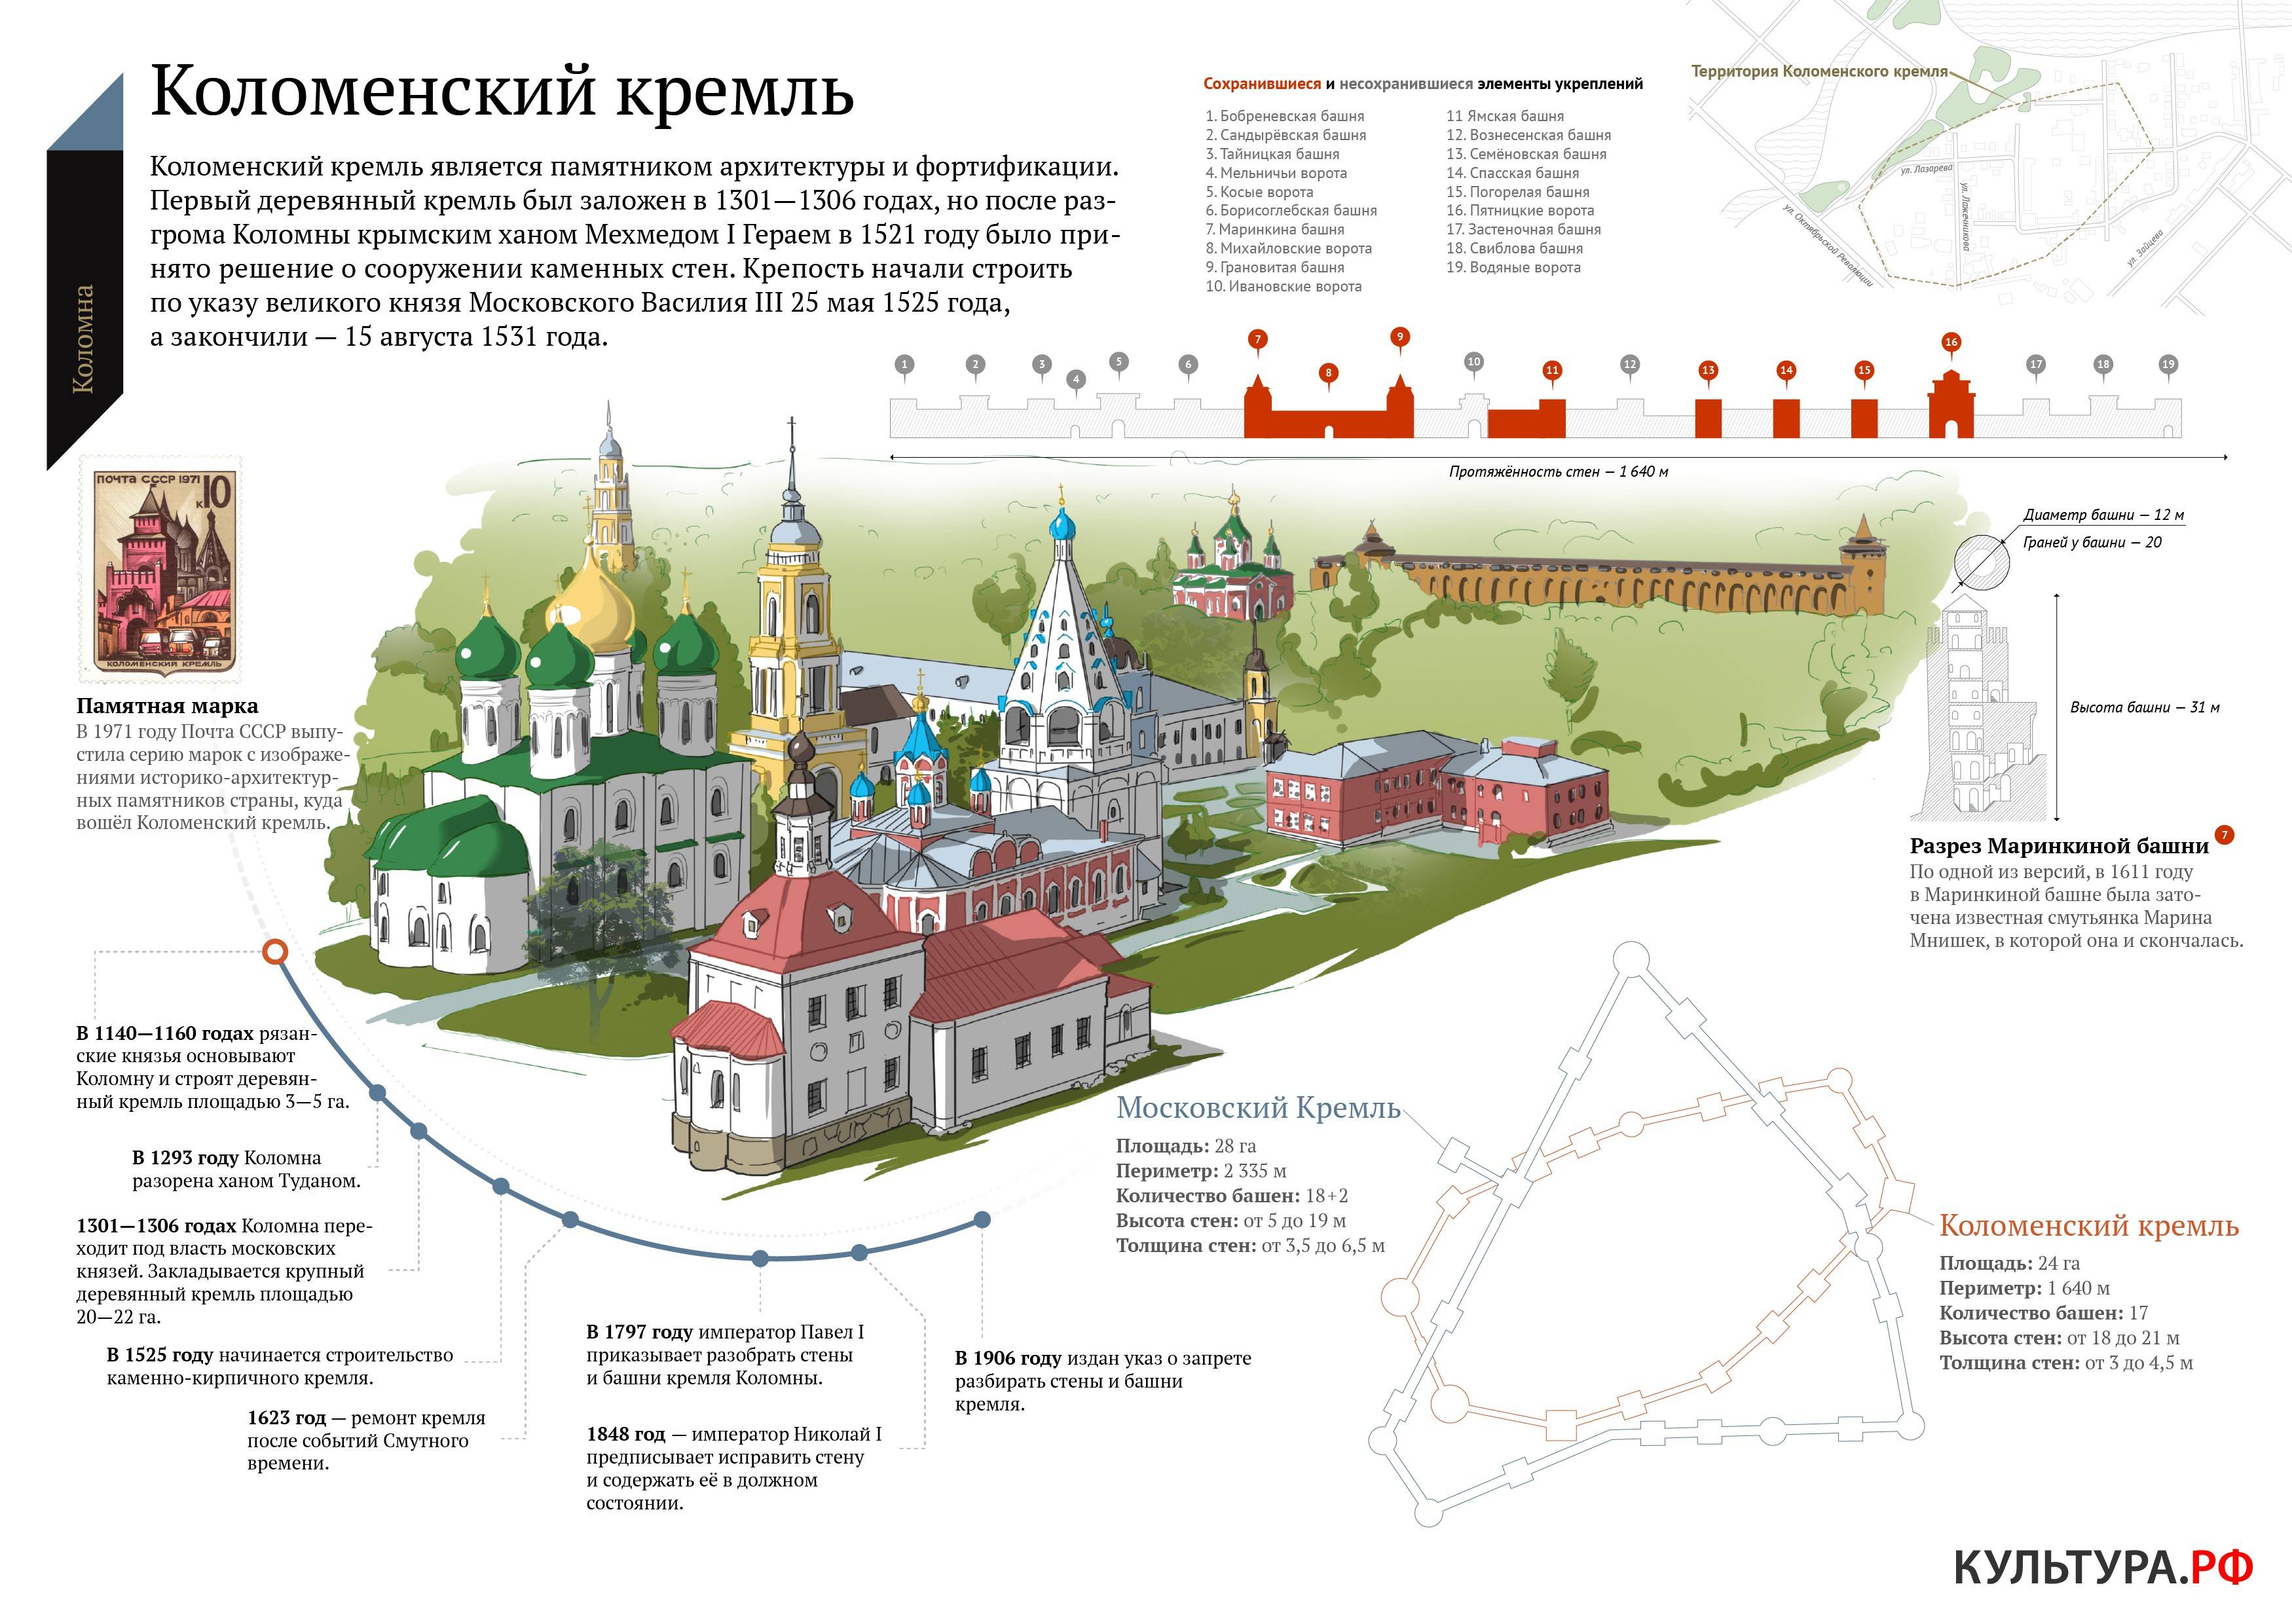 Коломенский кремль (коломна)